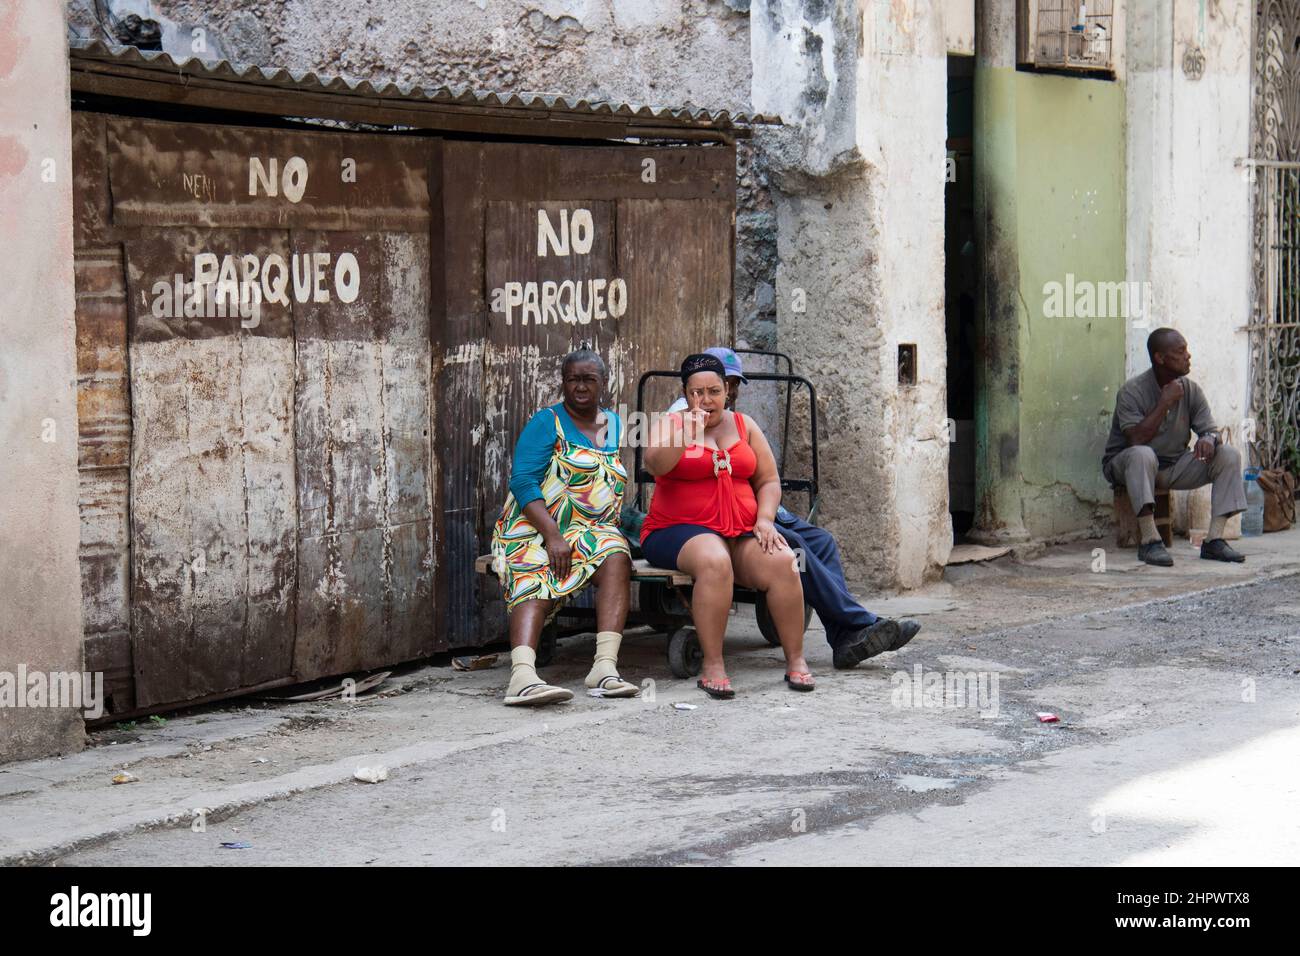 Un dollaro! La donna cubana punta il cercatore alla fotografa per darle un dollaro per sparare la foto. Foto Stock